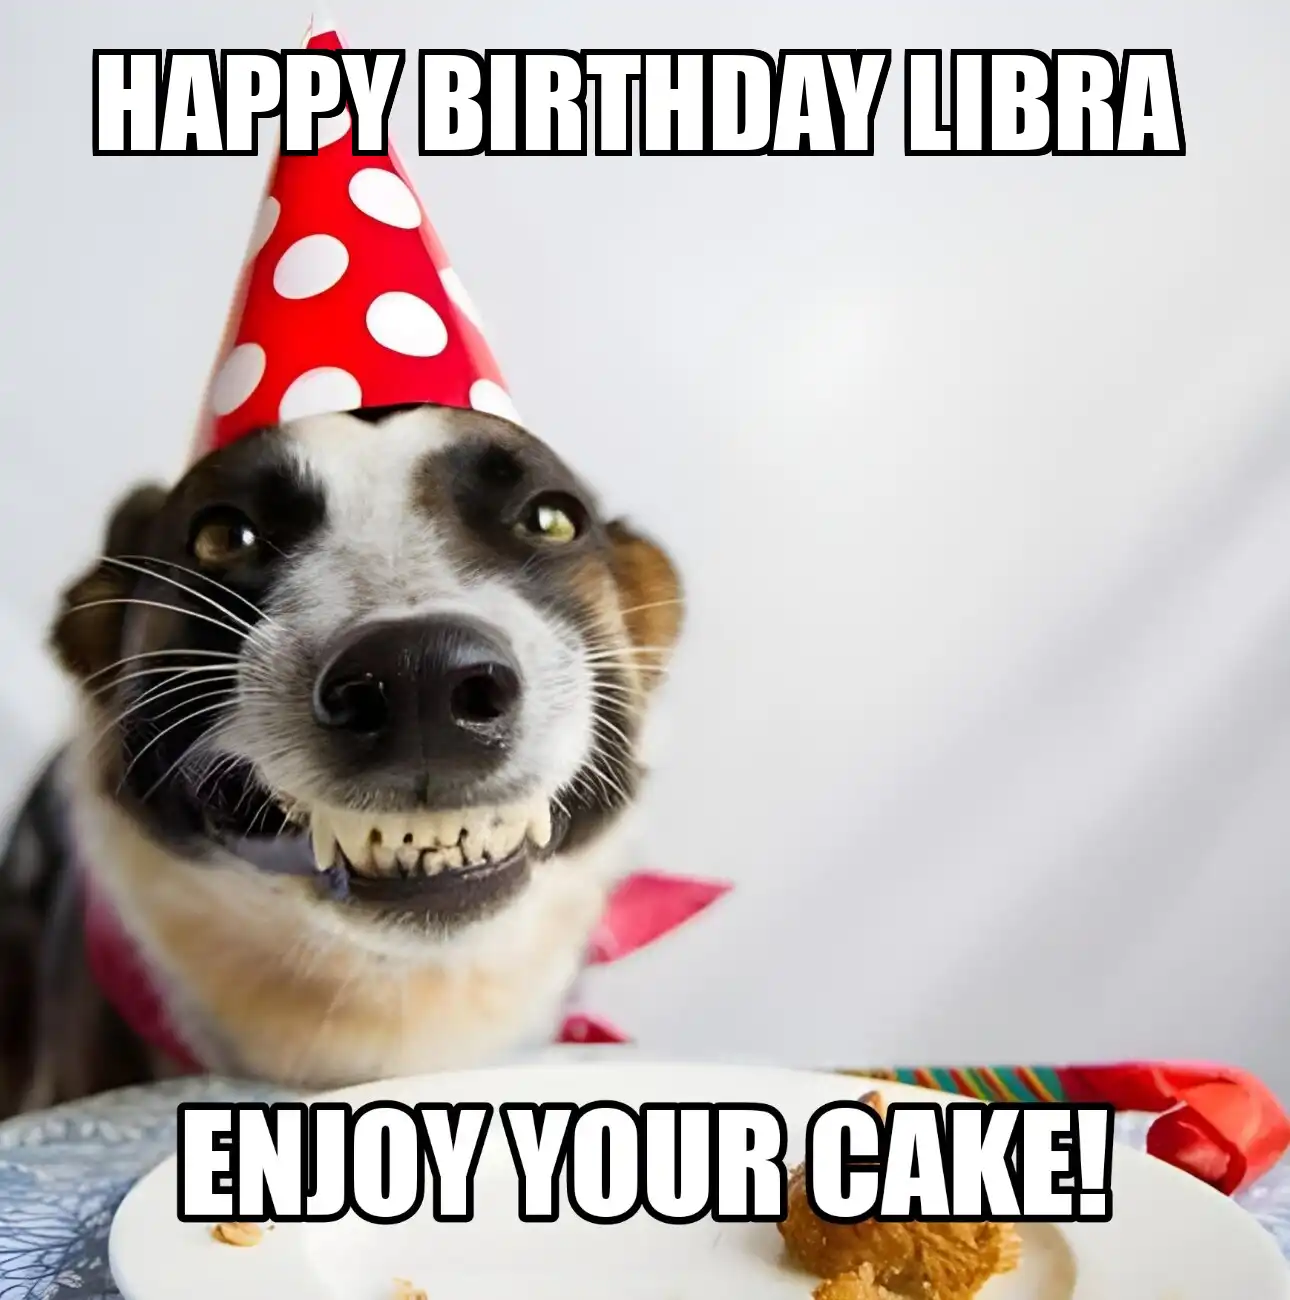 Happy Birthday Libra Enjoy Your Cake Dog Meme